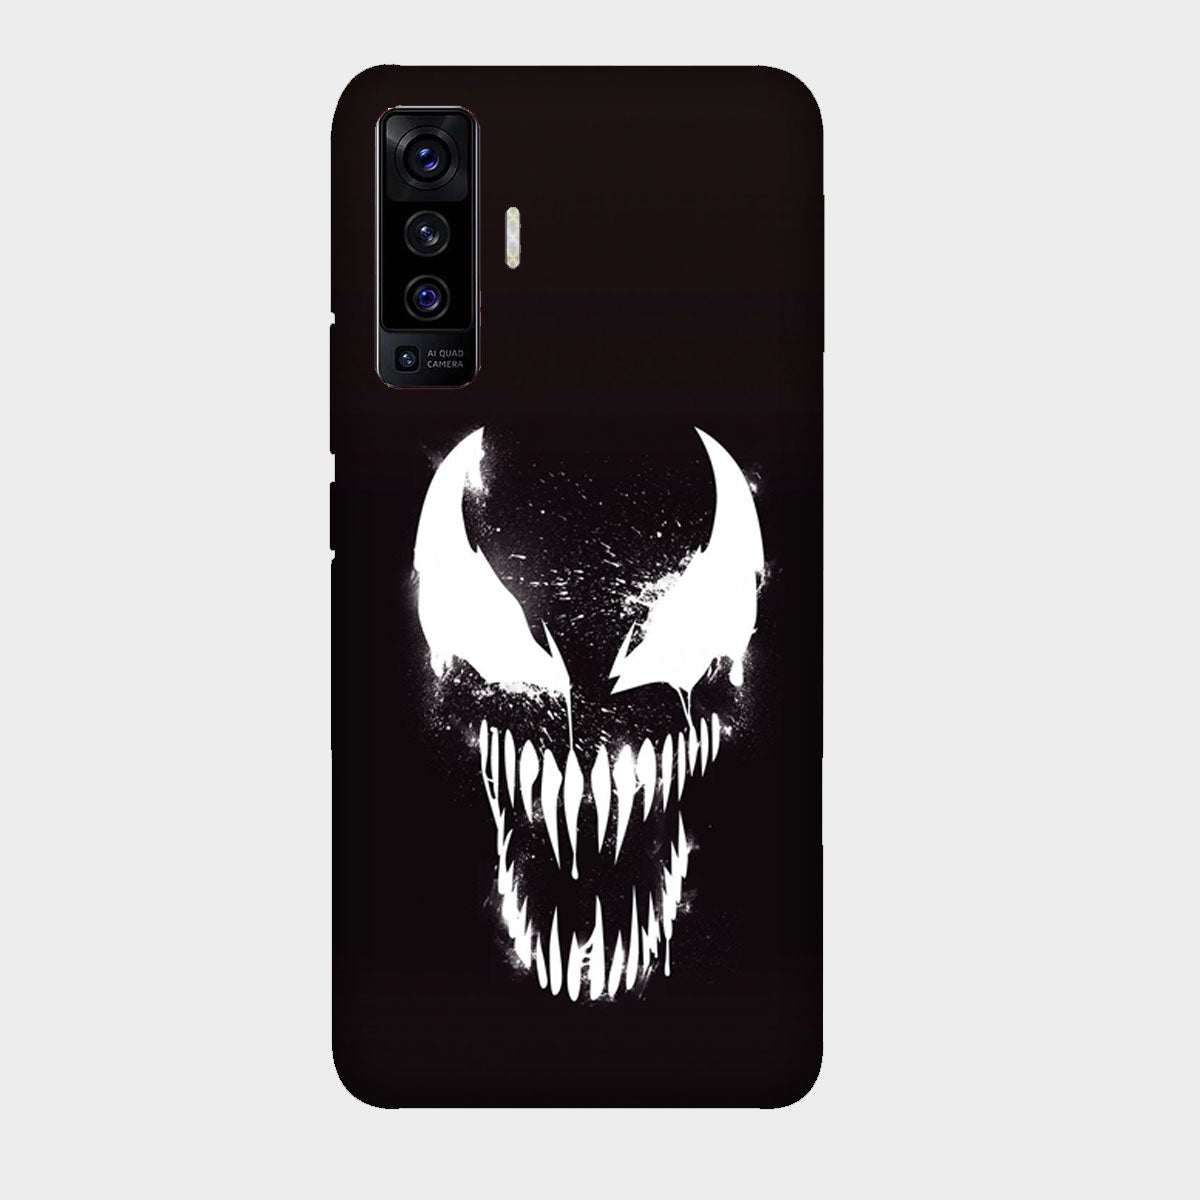 Venom - Mobile Phone Cover - Hard Case - Vivo